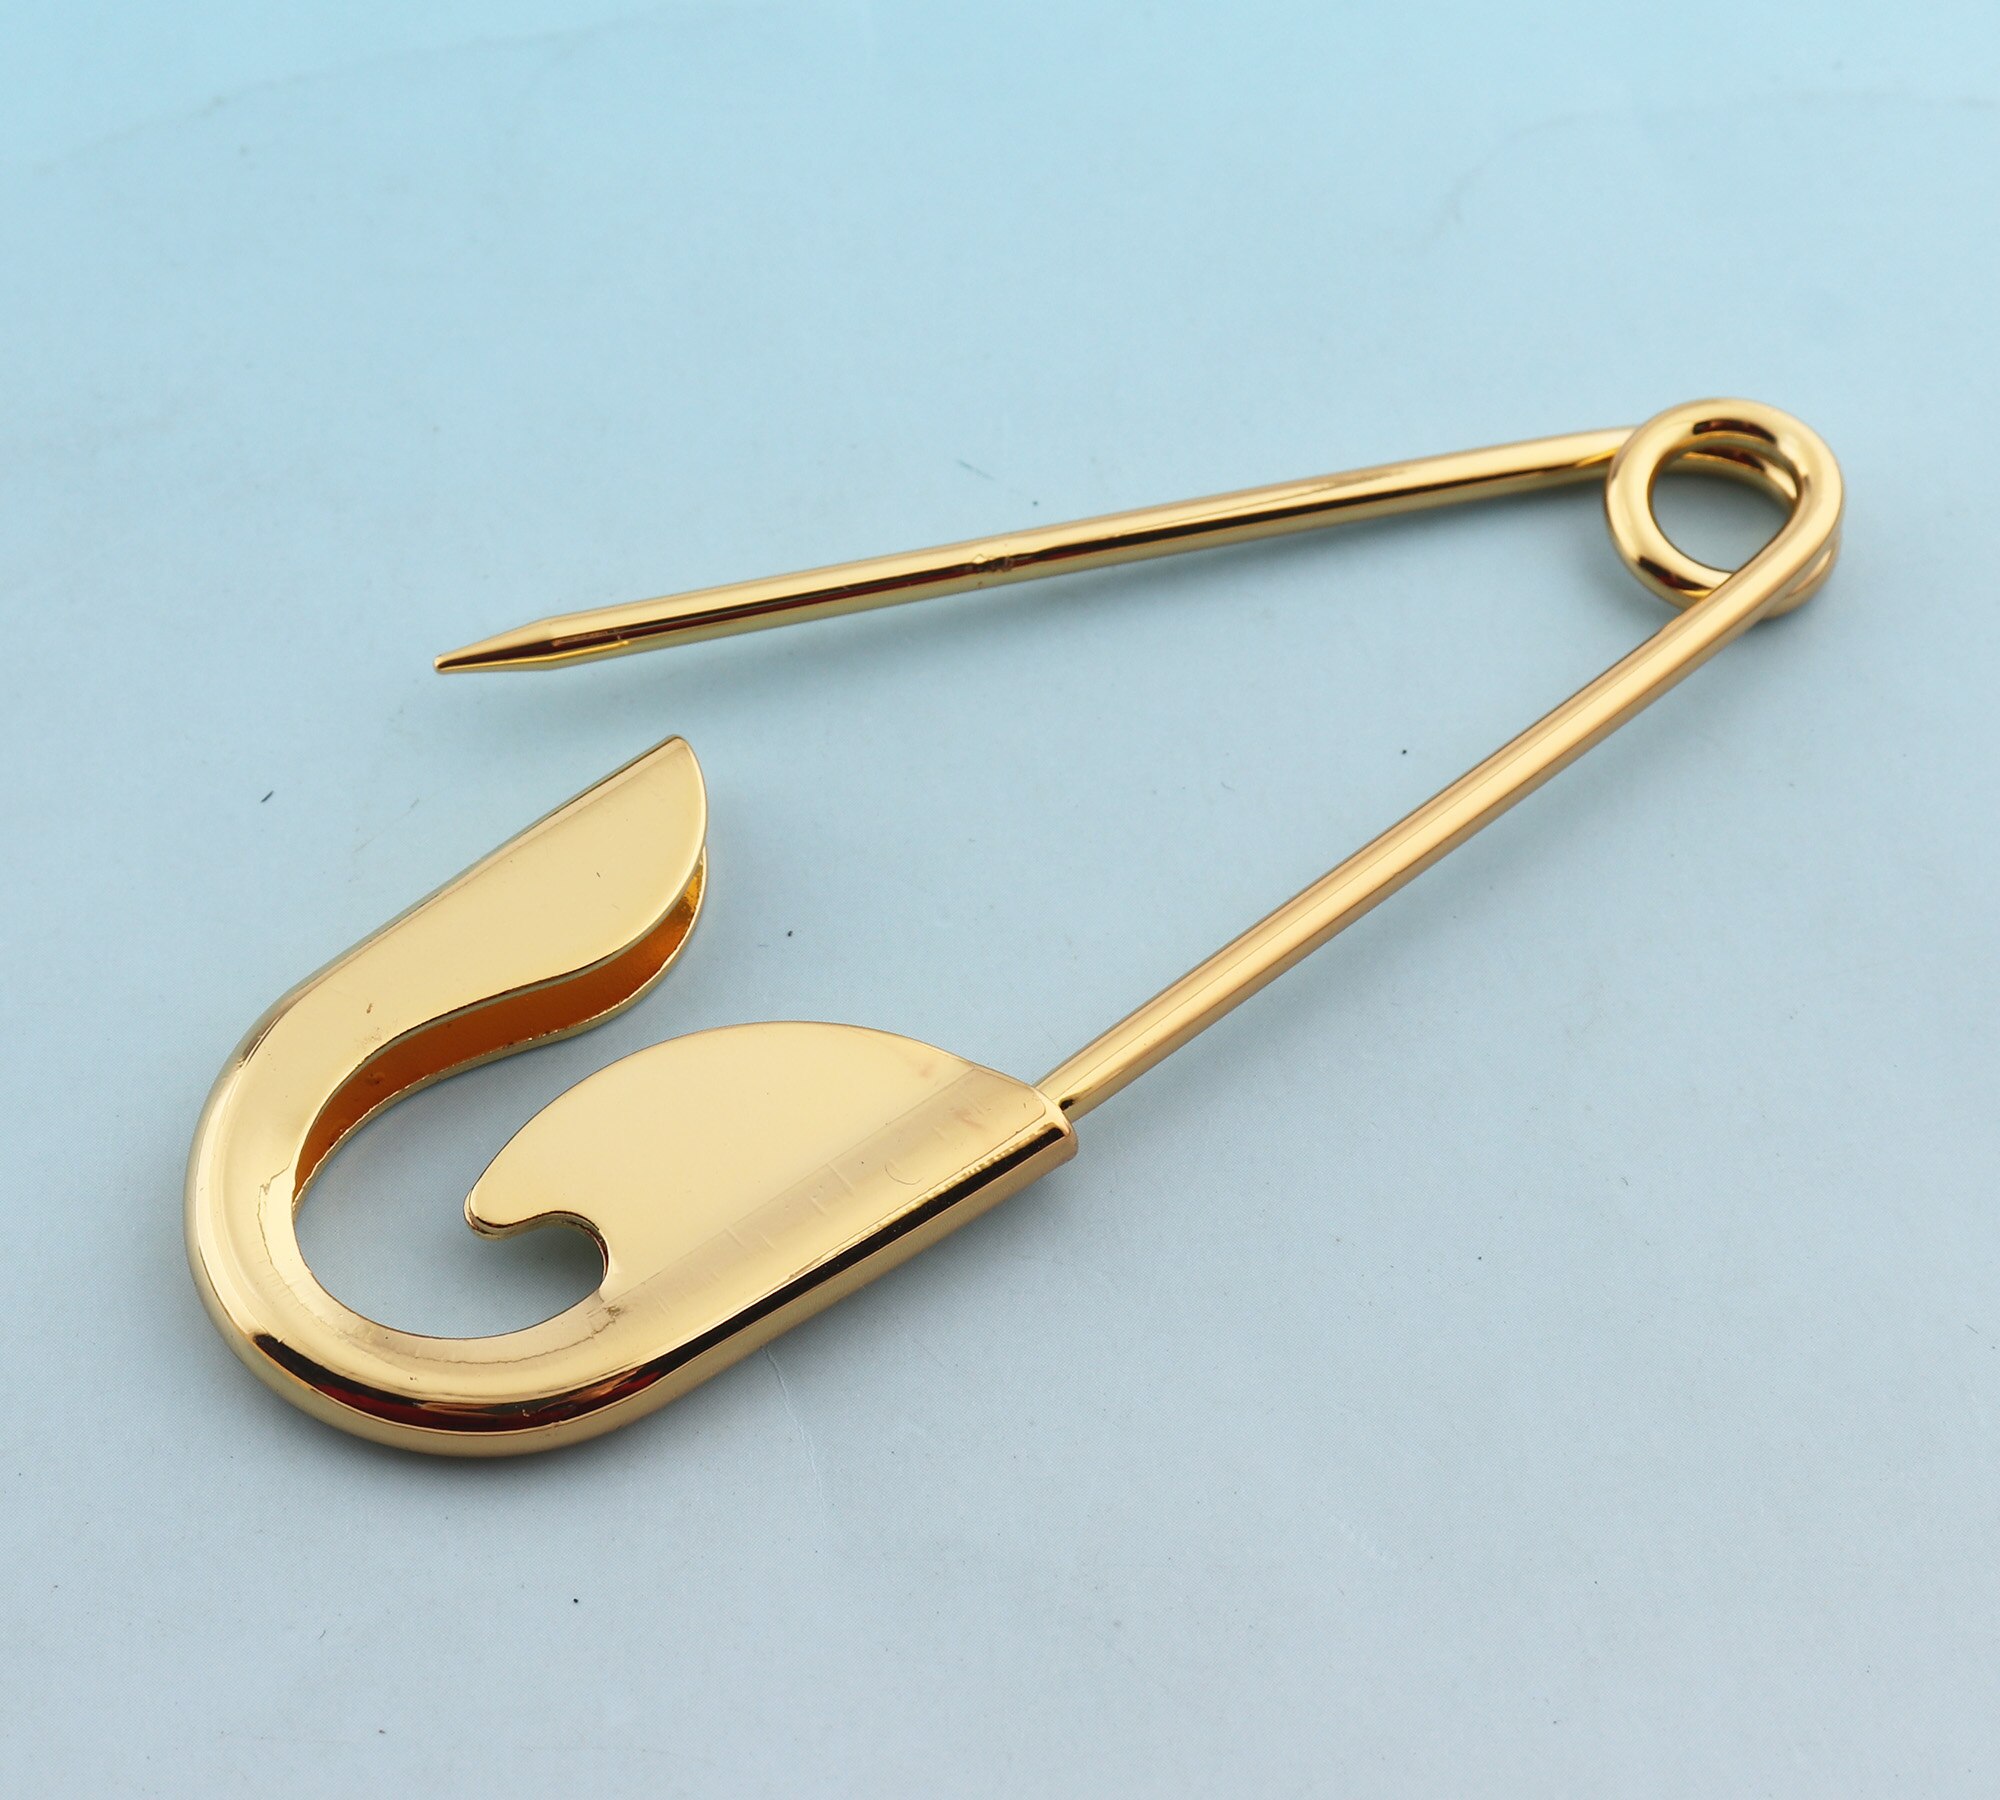 Guld sikkerhedsnåle 5 stk 10cm store sikkerhedsnåle metalnåle sjal pins broche sikkerhedsnåle diy tøjstifter